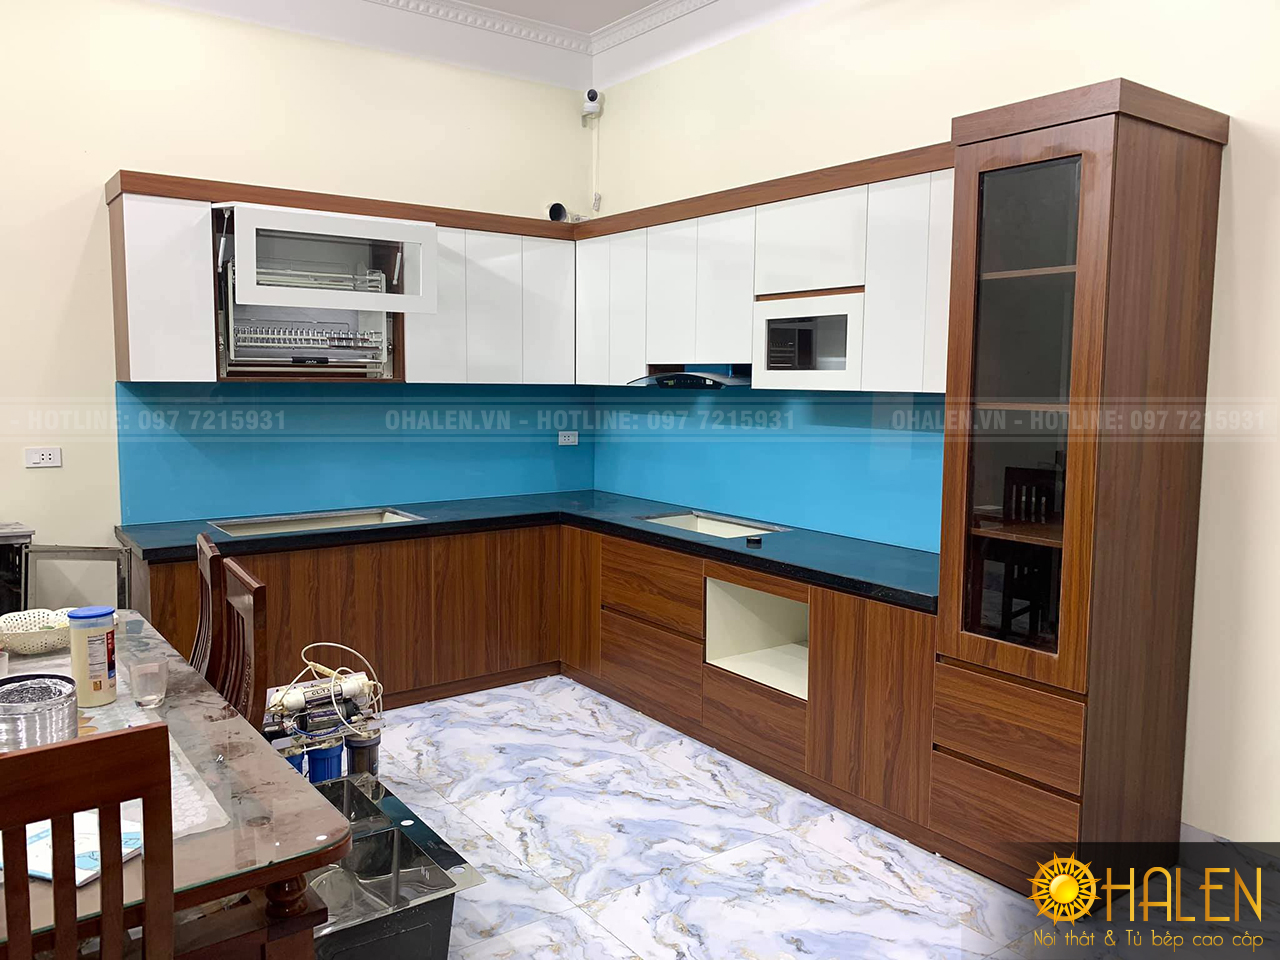 Mẫu tủ bếp Melamine màu trắng kết hợp vân gỗ tuyệt đẹp với điểm nhấn là kính ốp bếp màu xanh dương